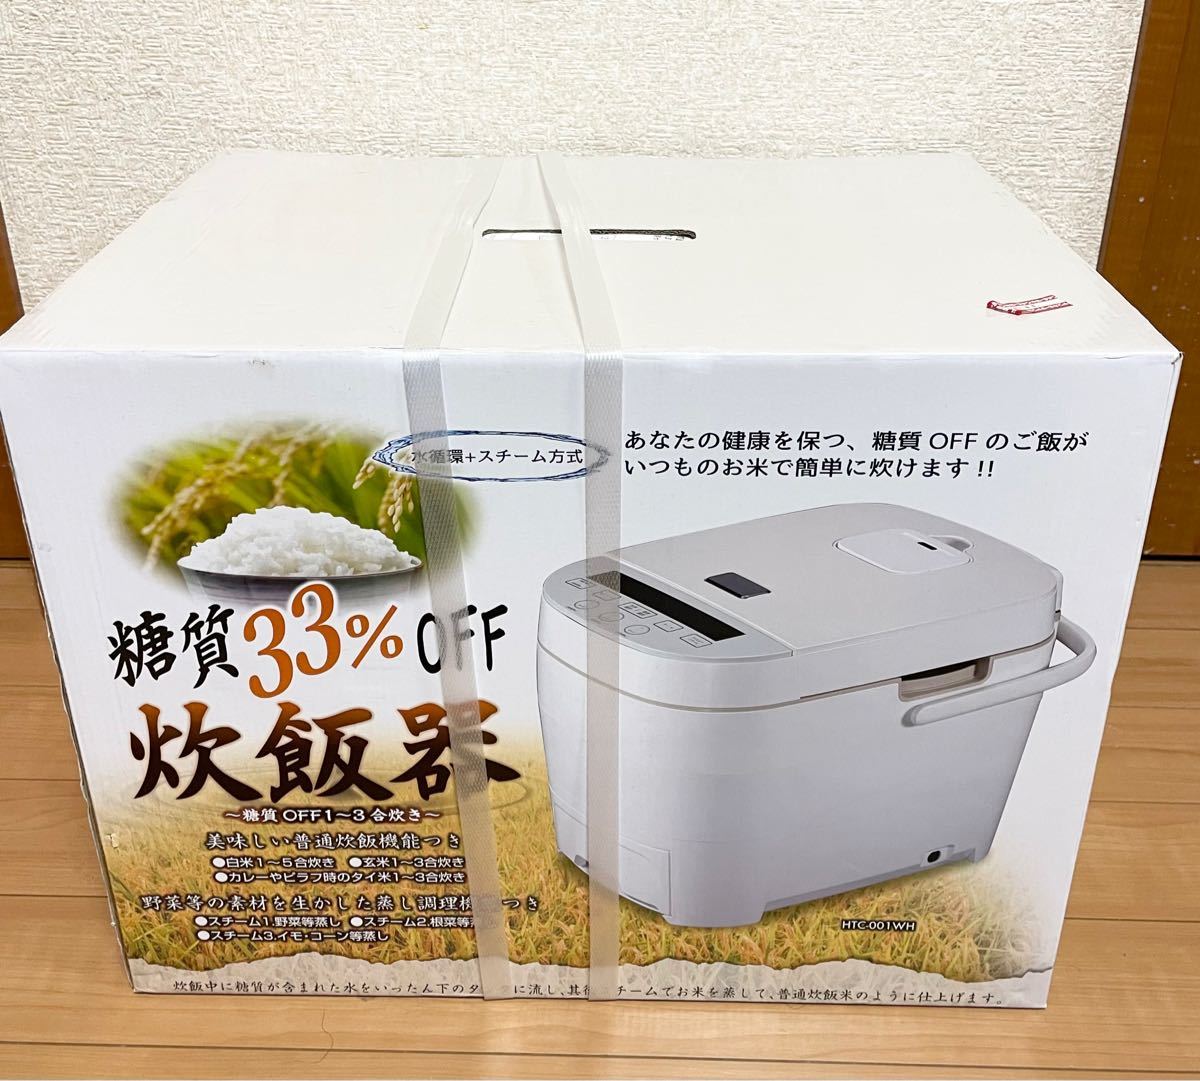 【新品未開封品】ヒロコーポレーション 5合炊き 糖質オフ炊飯器 HTC-001WH ホワイト